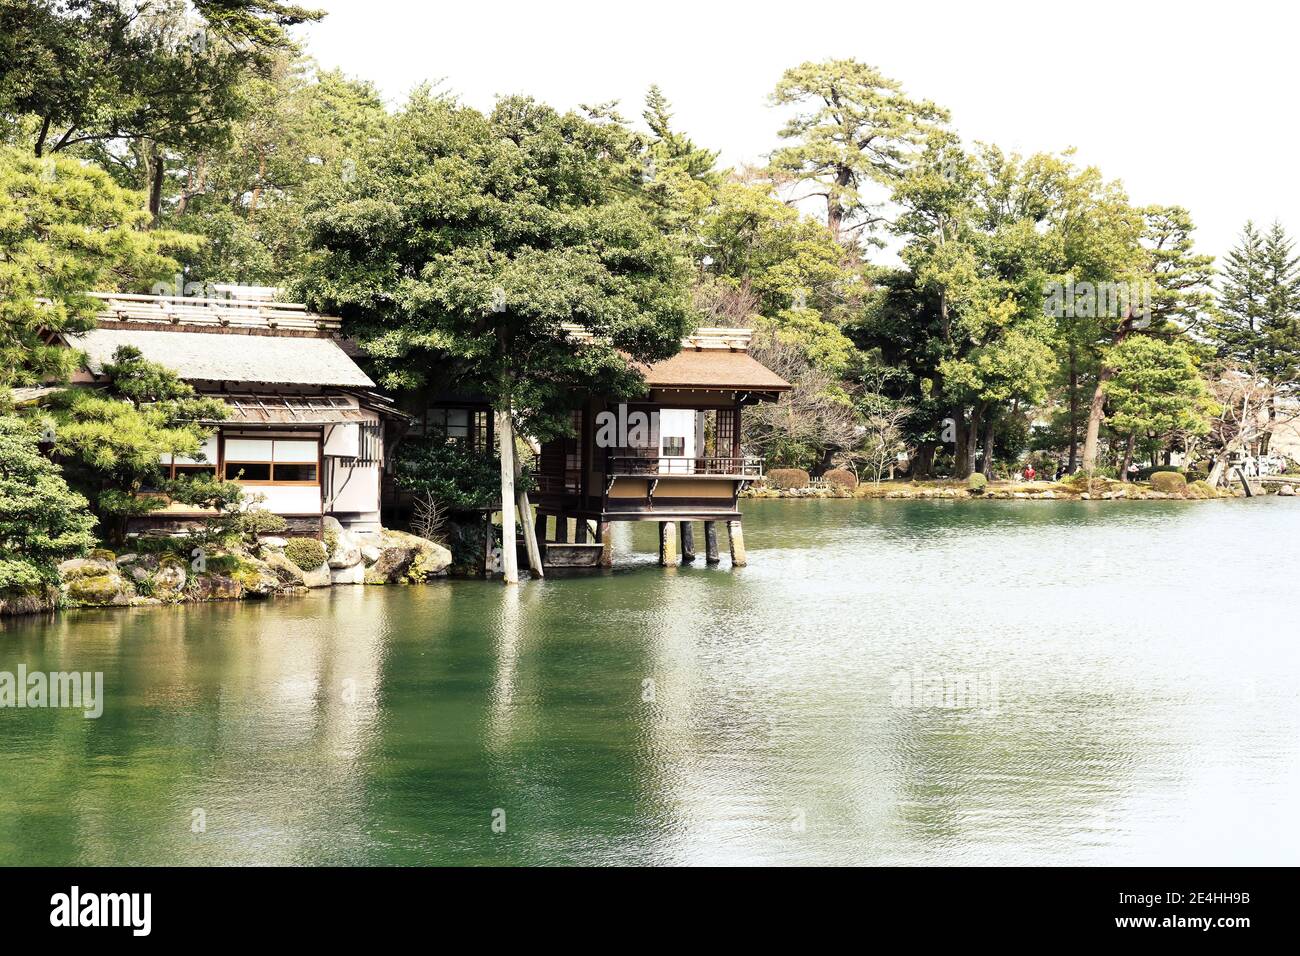 Paysage tranquille d'un bâtiment traditionnel japonais au bord d'un lac dans le parc de Kenroku-en Garden, Kanazawa, Japon Banque D'Images